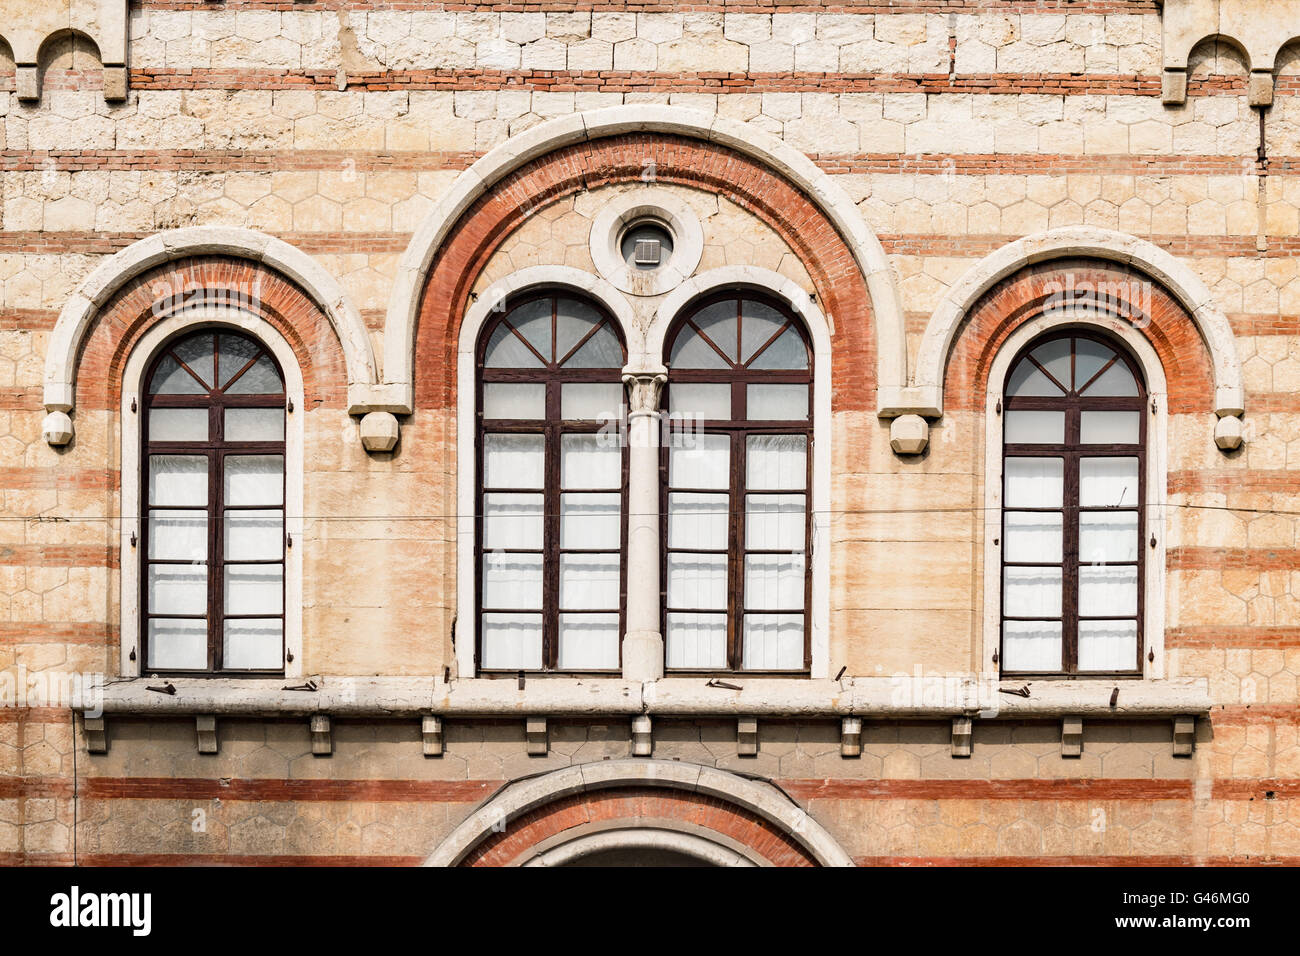 Alte mittelalterliche Rundbogenfenster im romanischen Stil. Stockfoto